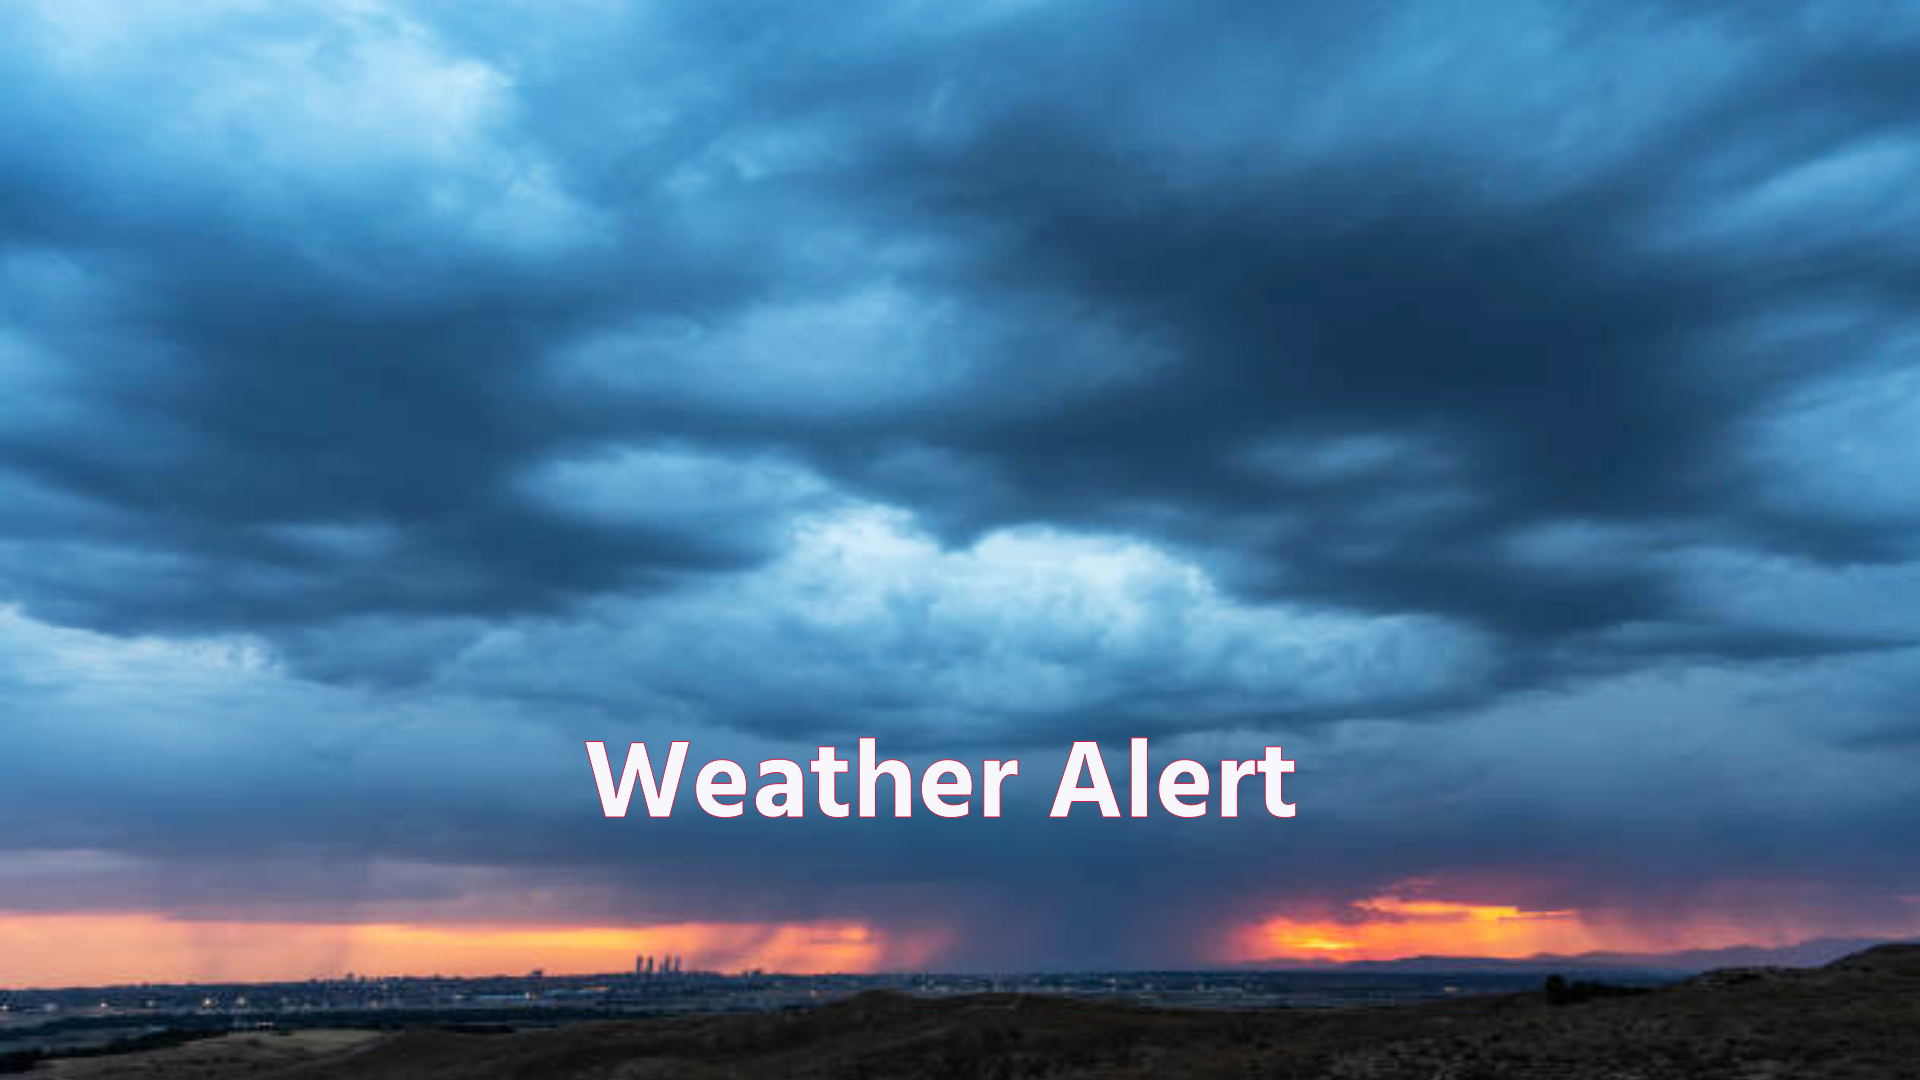 MP Weather Update: एमपी के ज्यादातर शहरों में आंधी, बारिश और ओलावृष्टि का अलर्ट,
देखें अपडेट